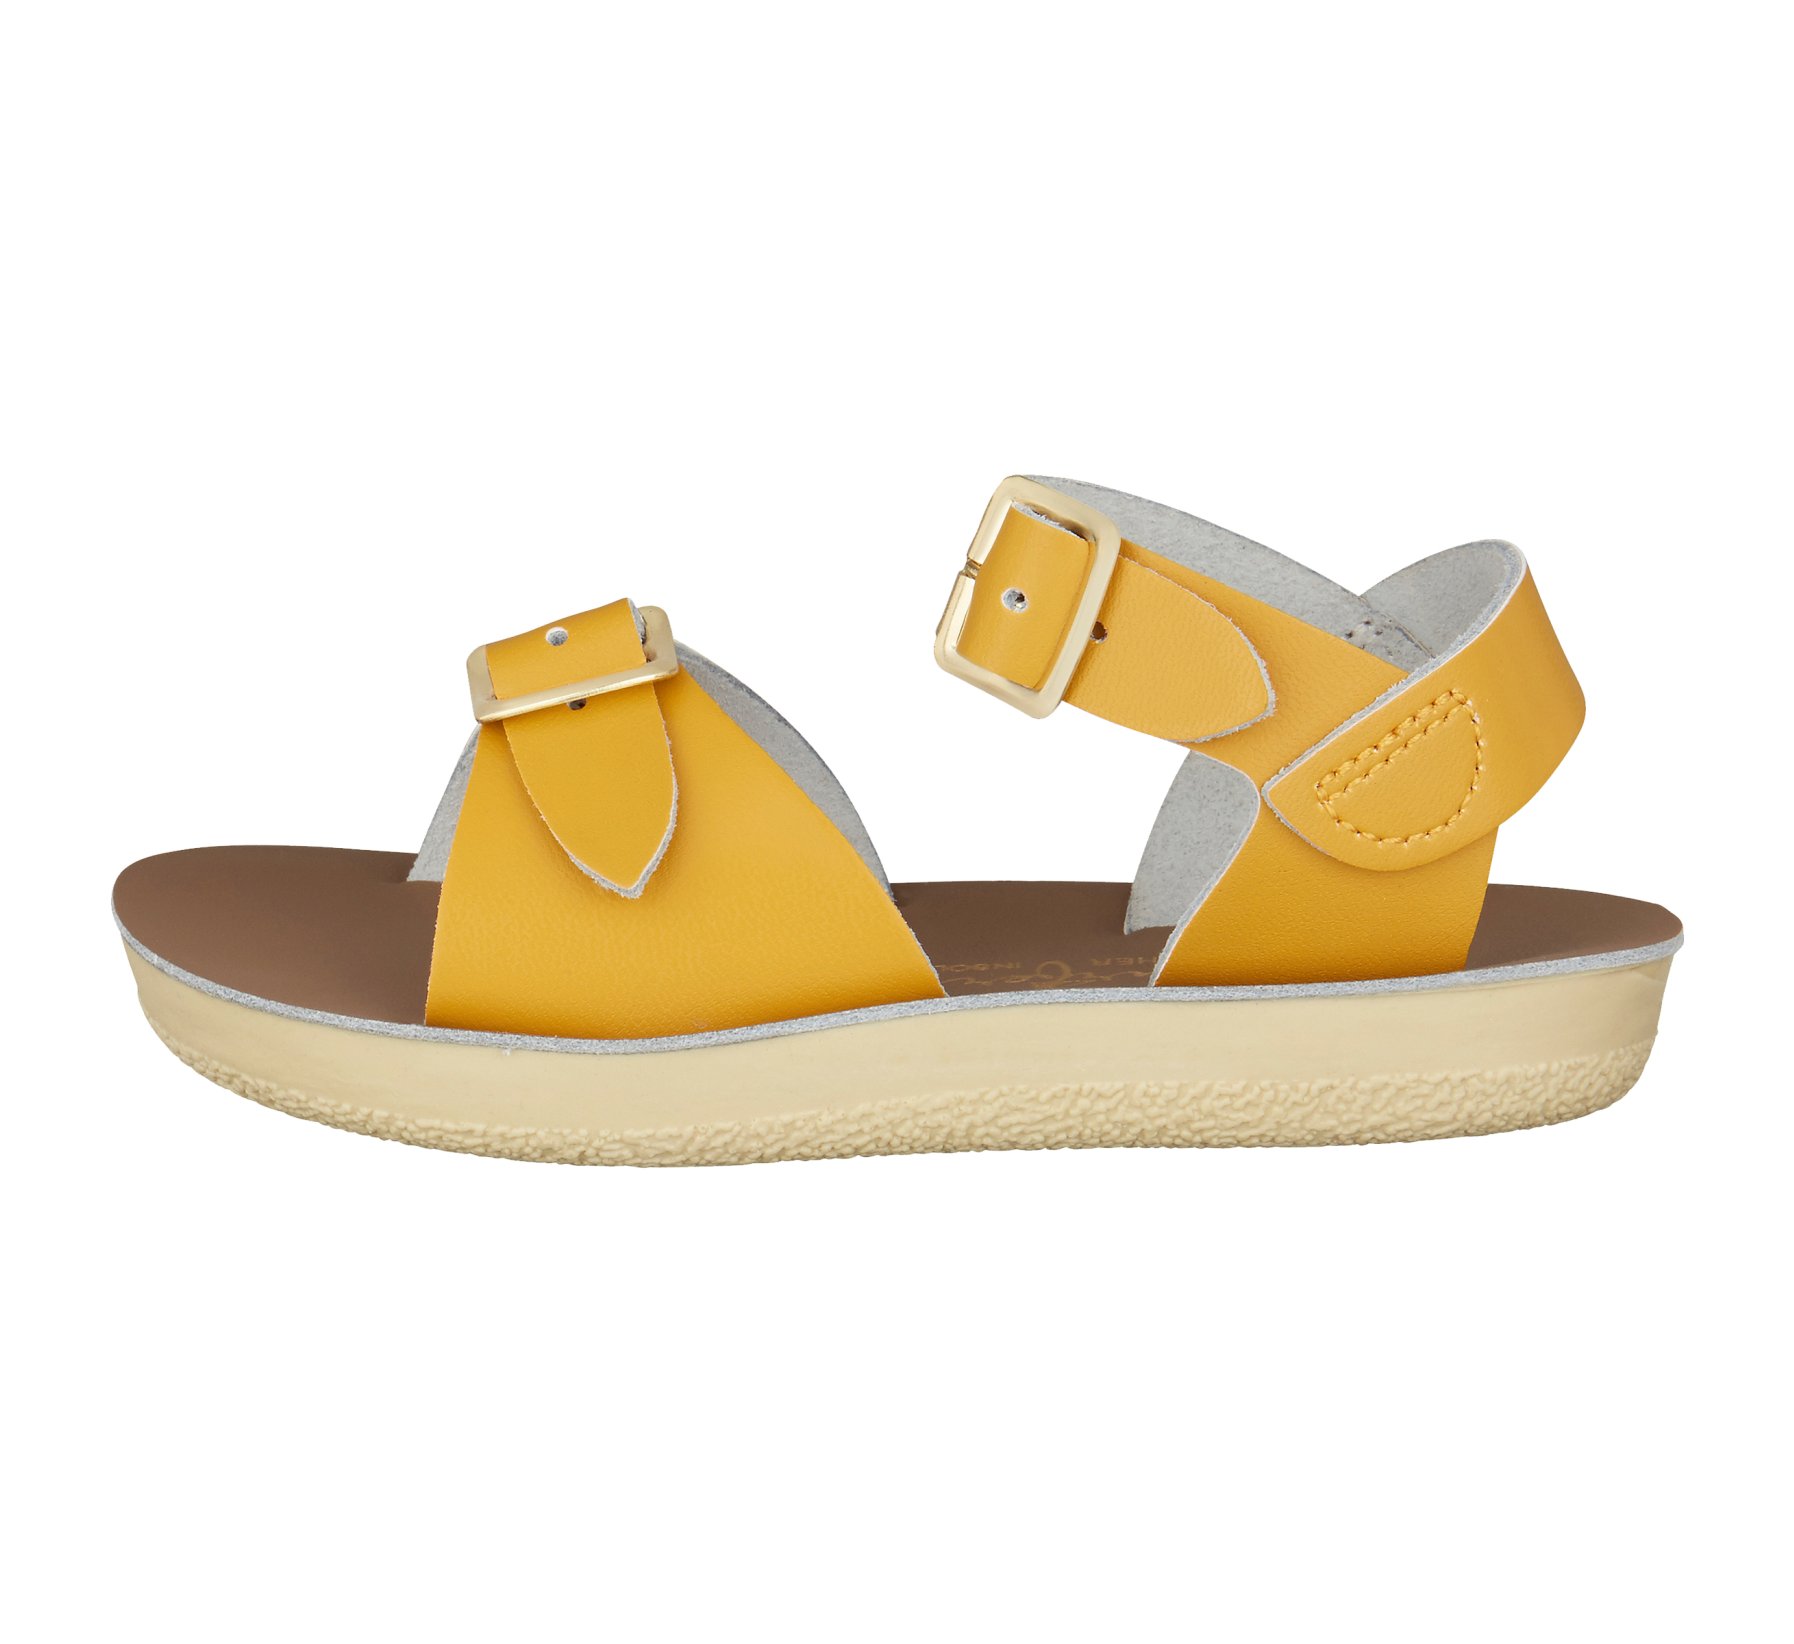 Surfer Mustard - Salt Water Sandals